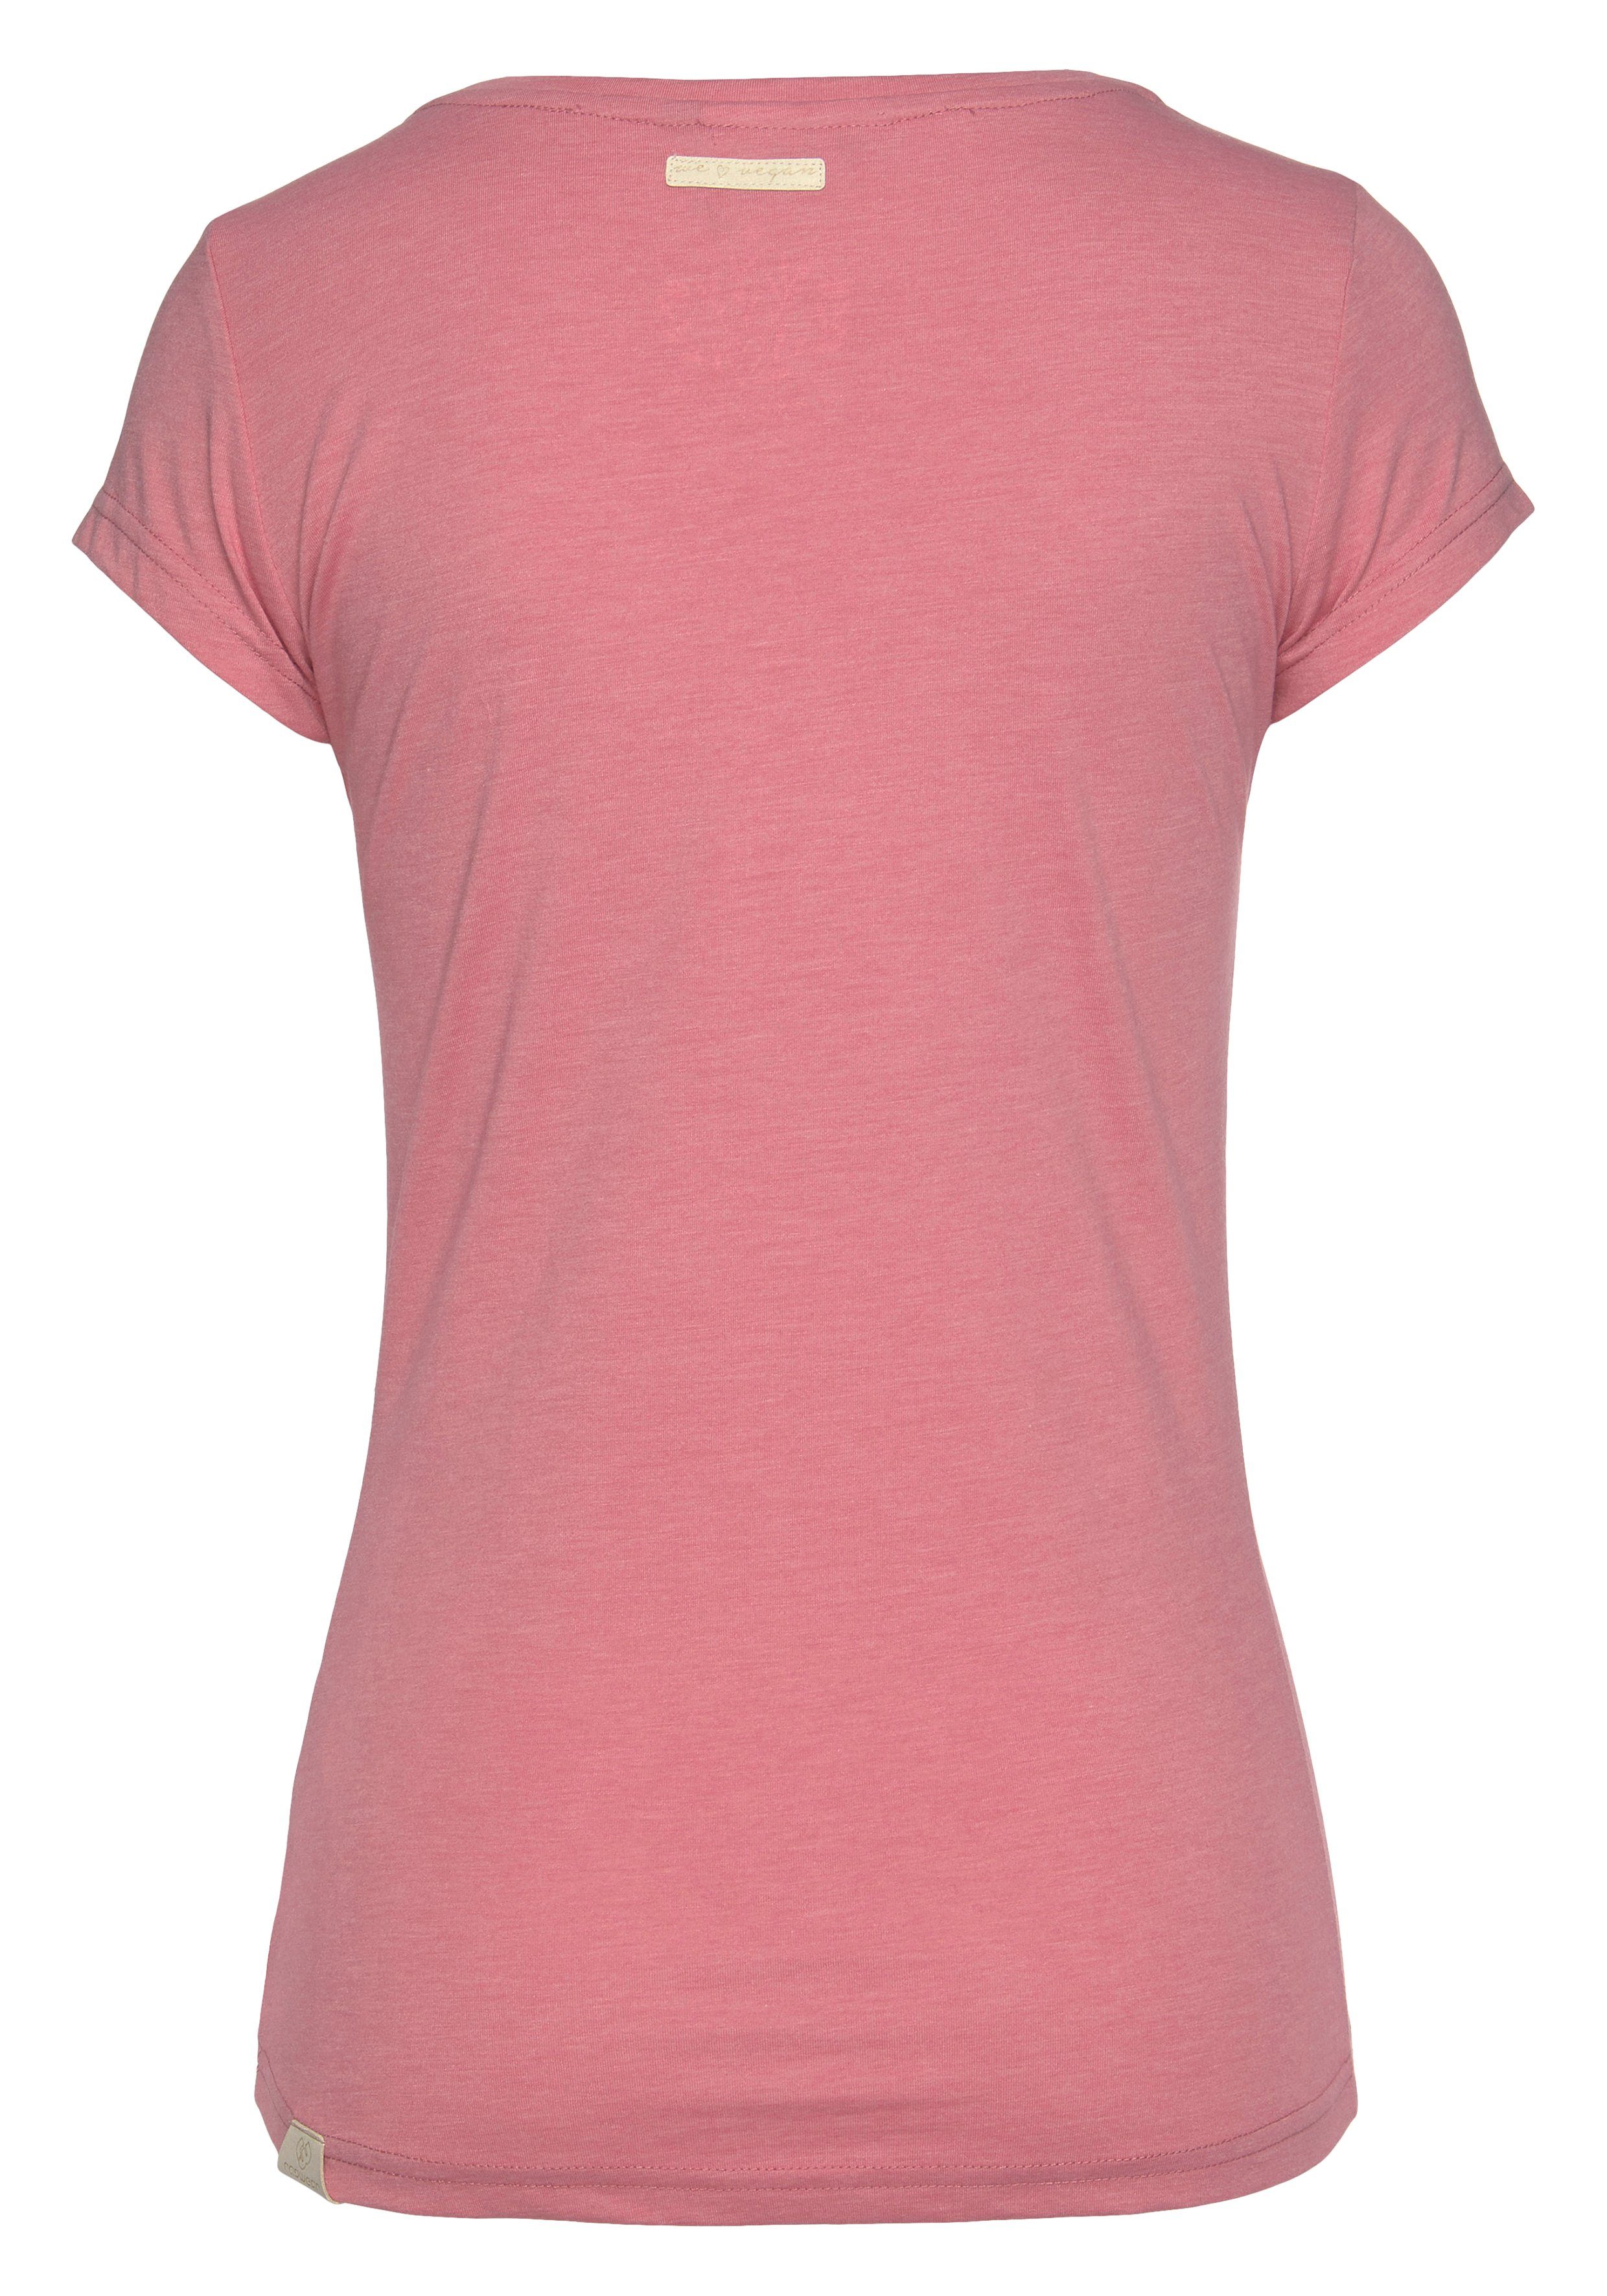 Ragwear T-Shirt MINT O natürlicher Logoschriftzug in pink und 4043 Zierknopf-Applikation Holzoptik mit